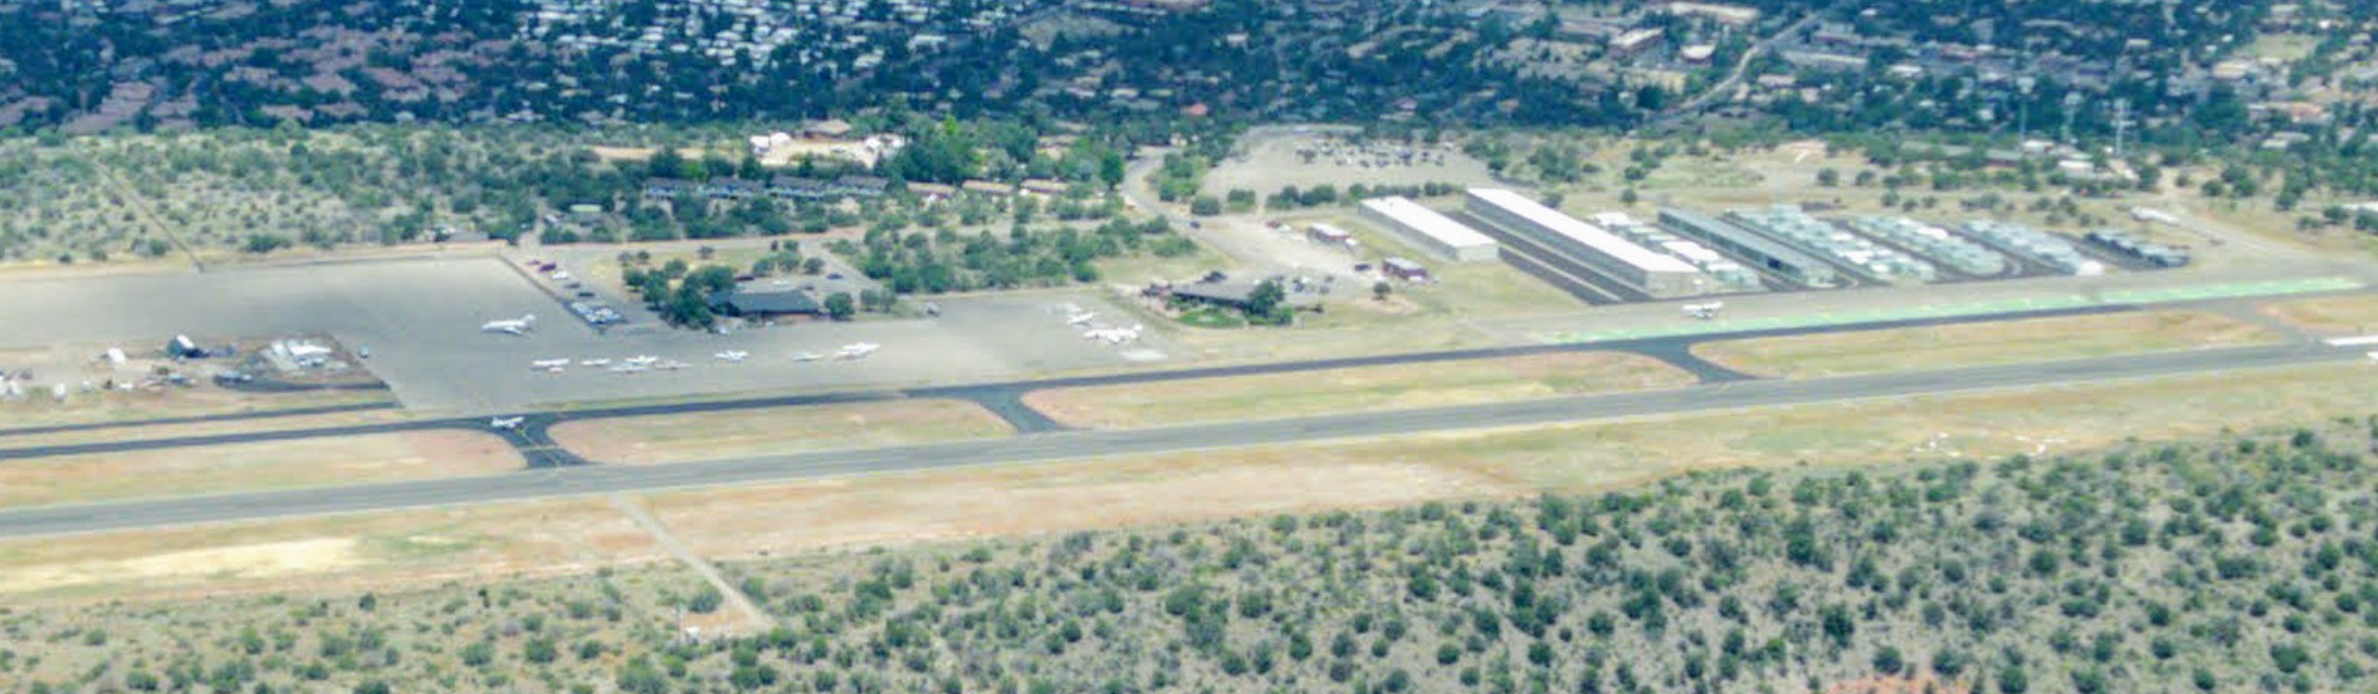 View of Sedona Airport